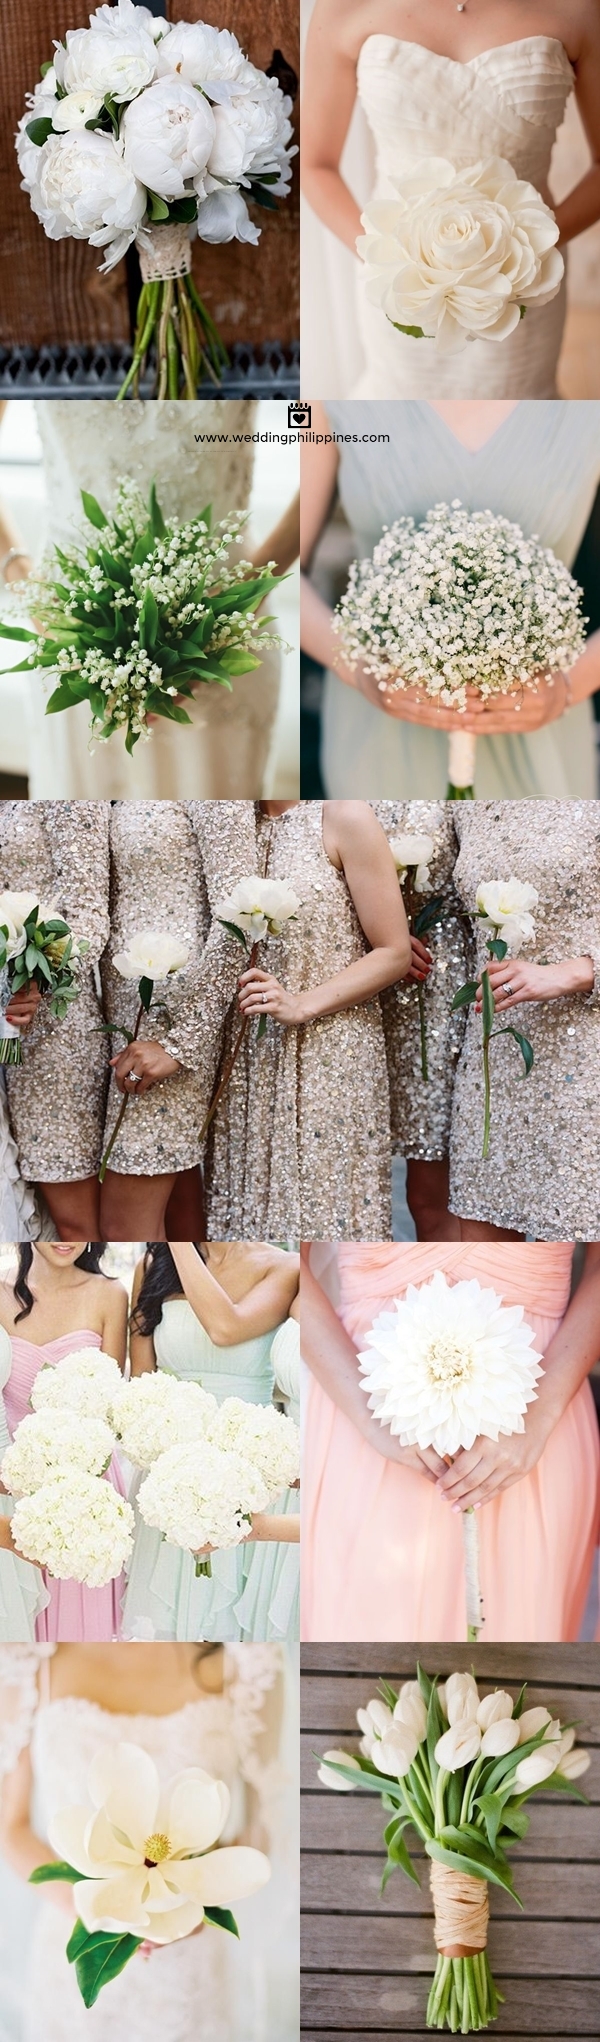 Wedding Philippines - White Single Bloom Flower Bouquet Ideas